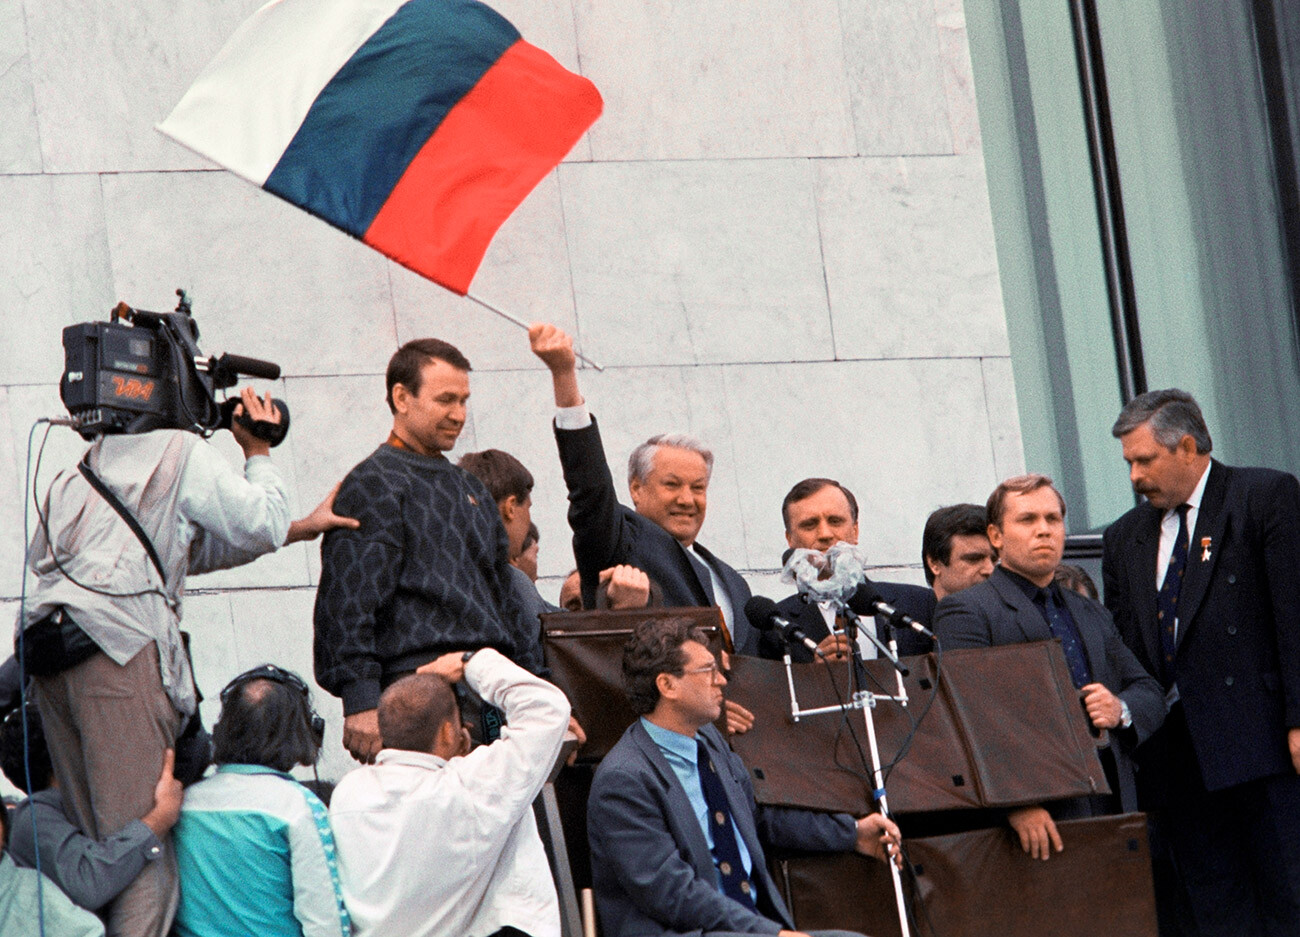 Протести пред Белом кућом у Москви у августу 1991. Председник Русије Борис Николајевич Јељцин (са заставом).